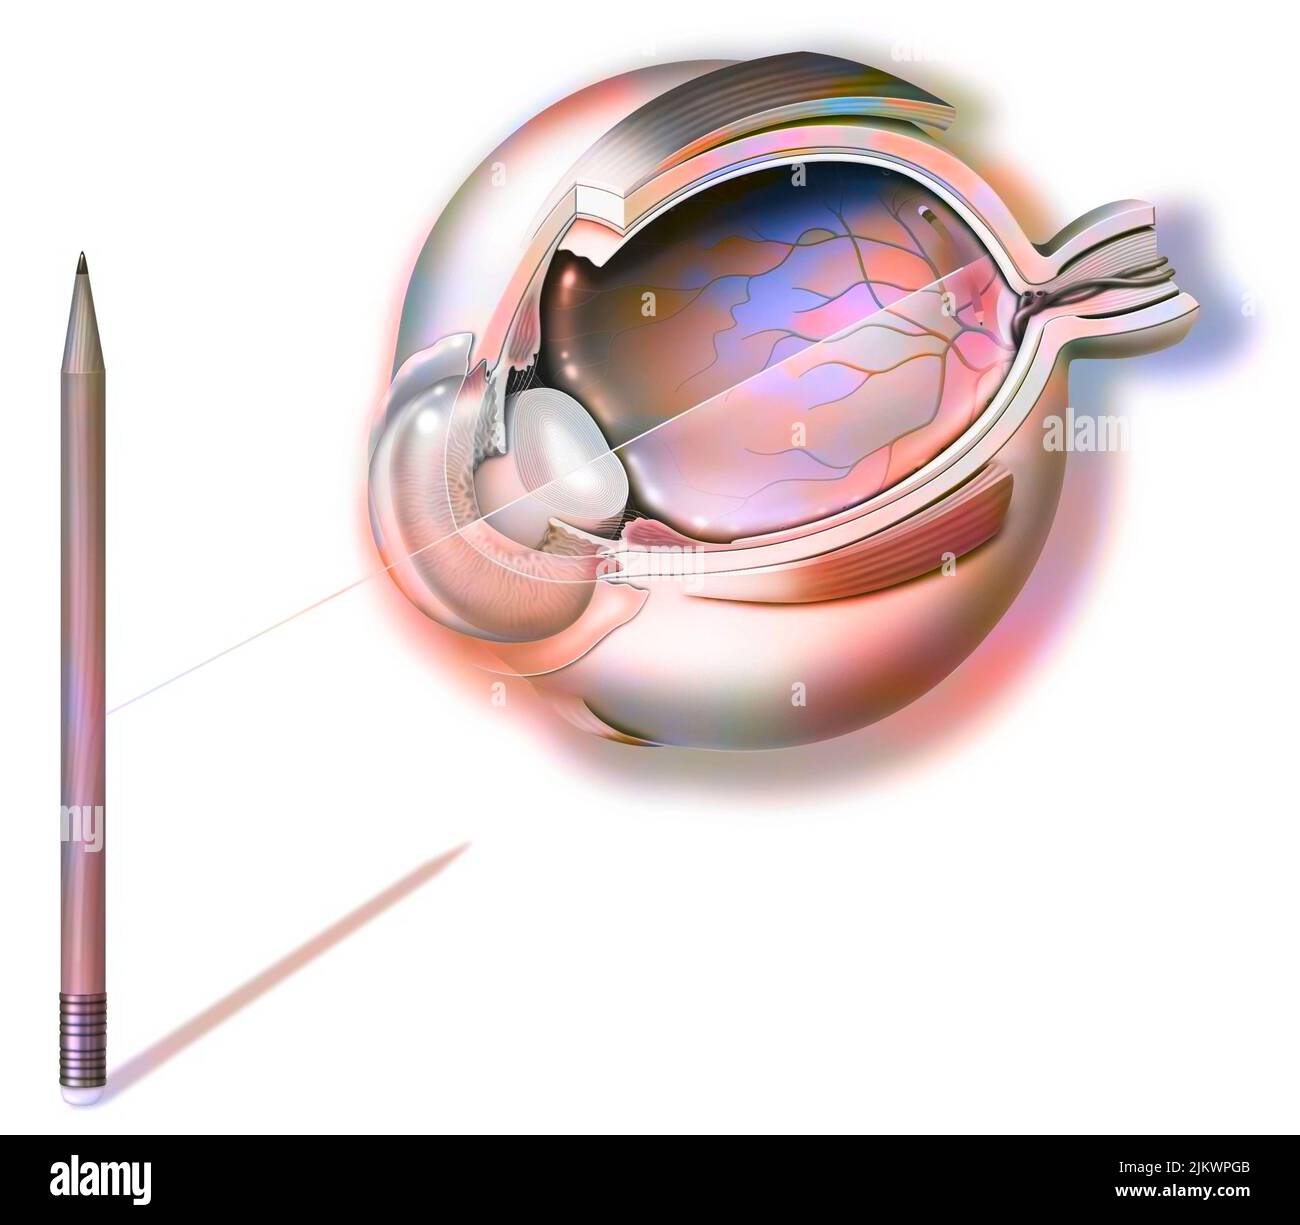 Anatomie d'un œil et de la vision, réflexion au crayon sur la rétine. Banque D'Images